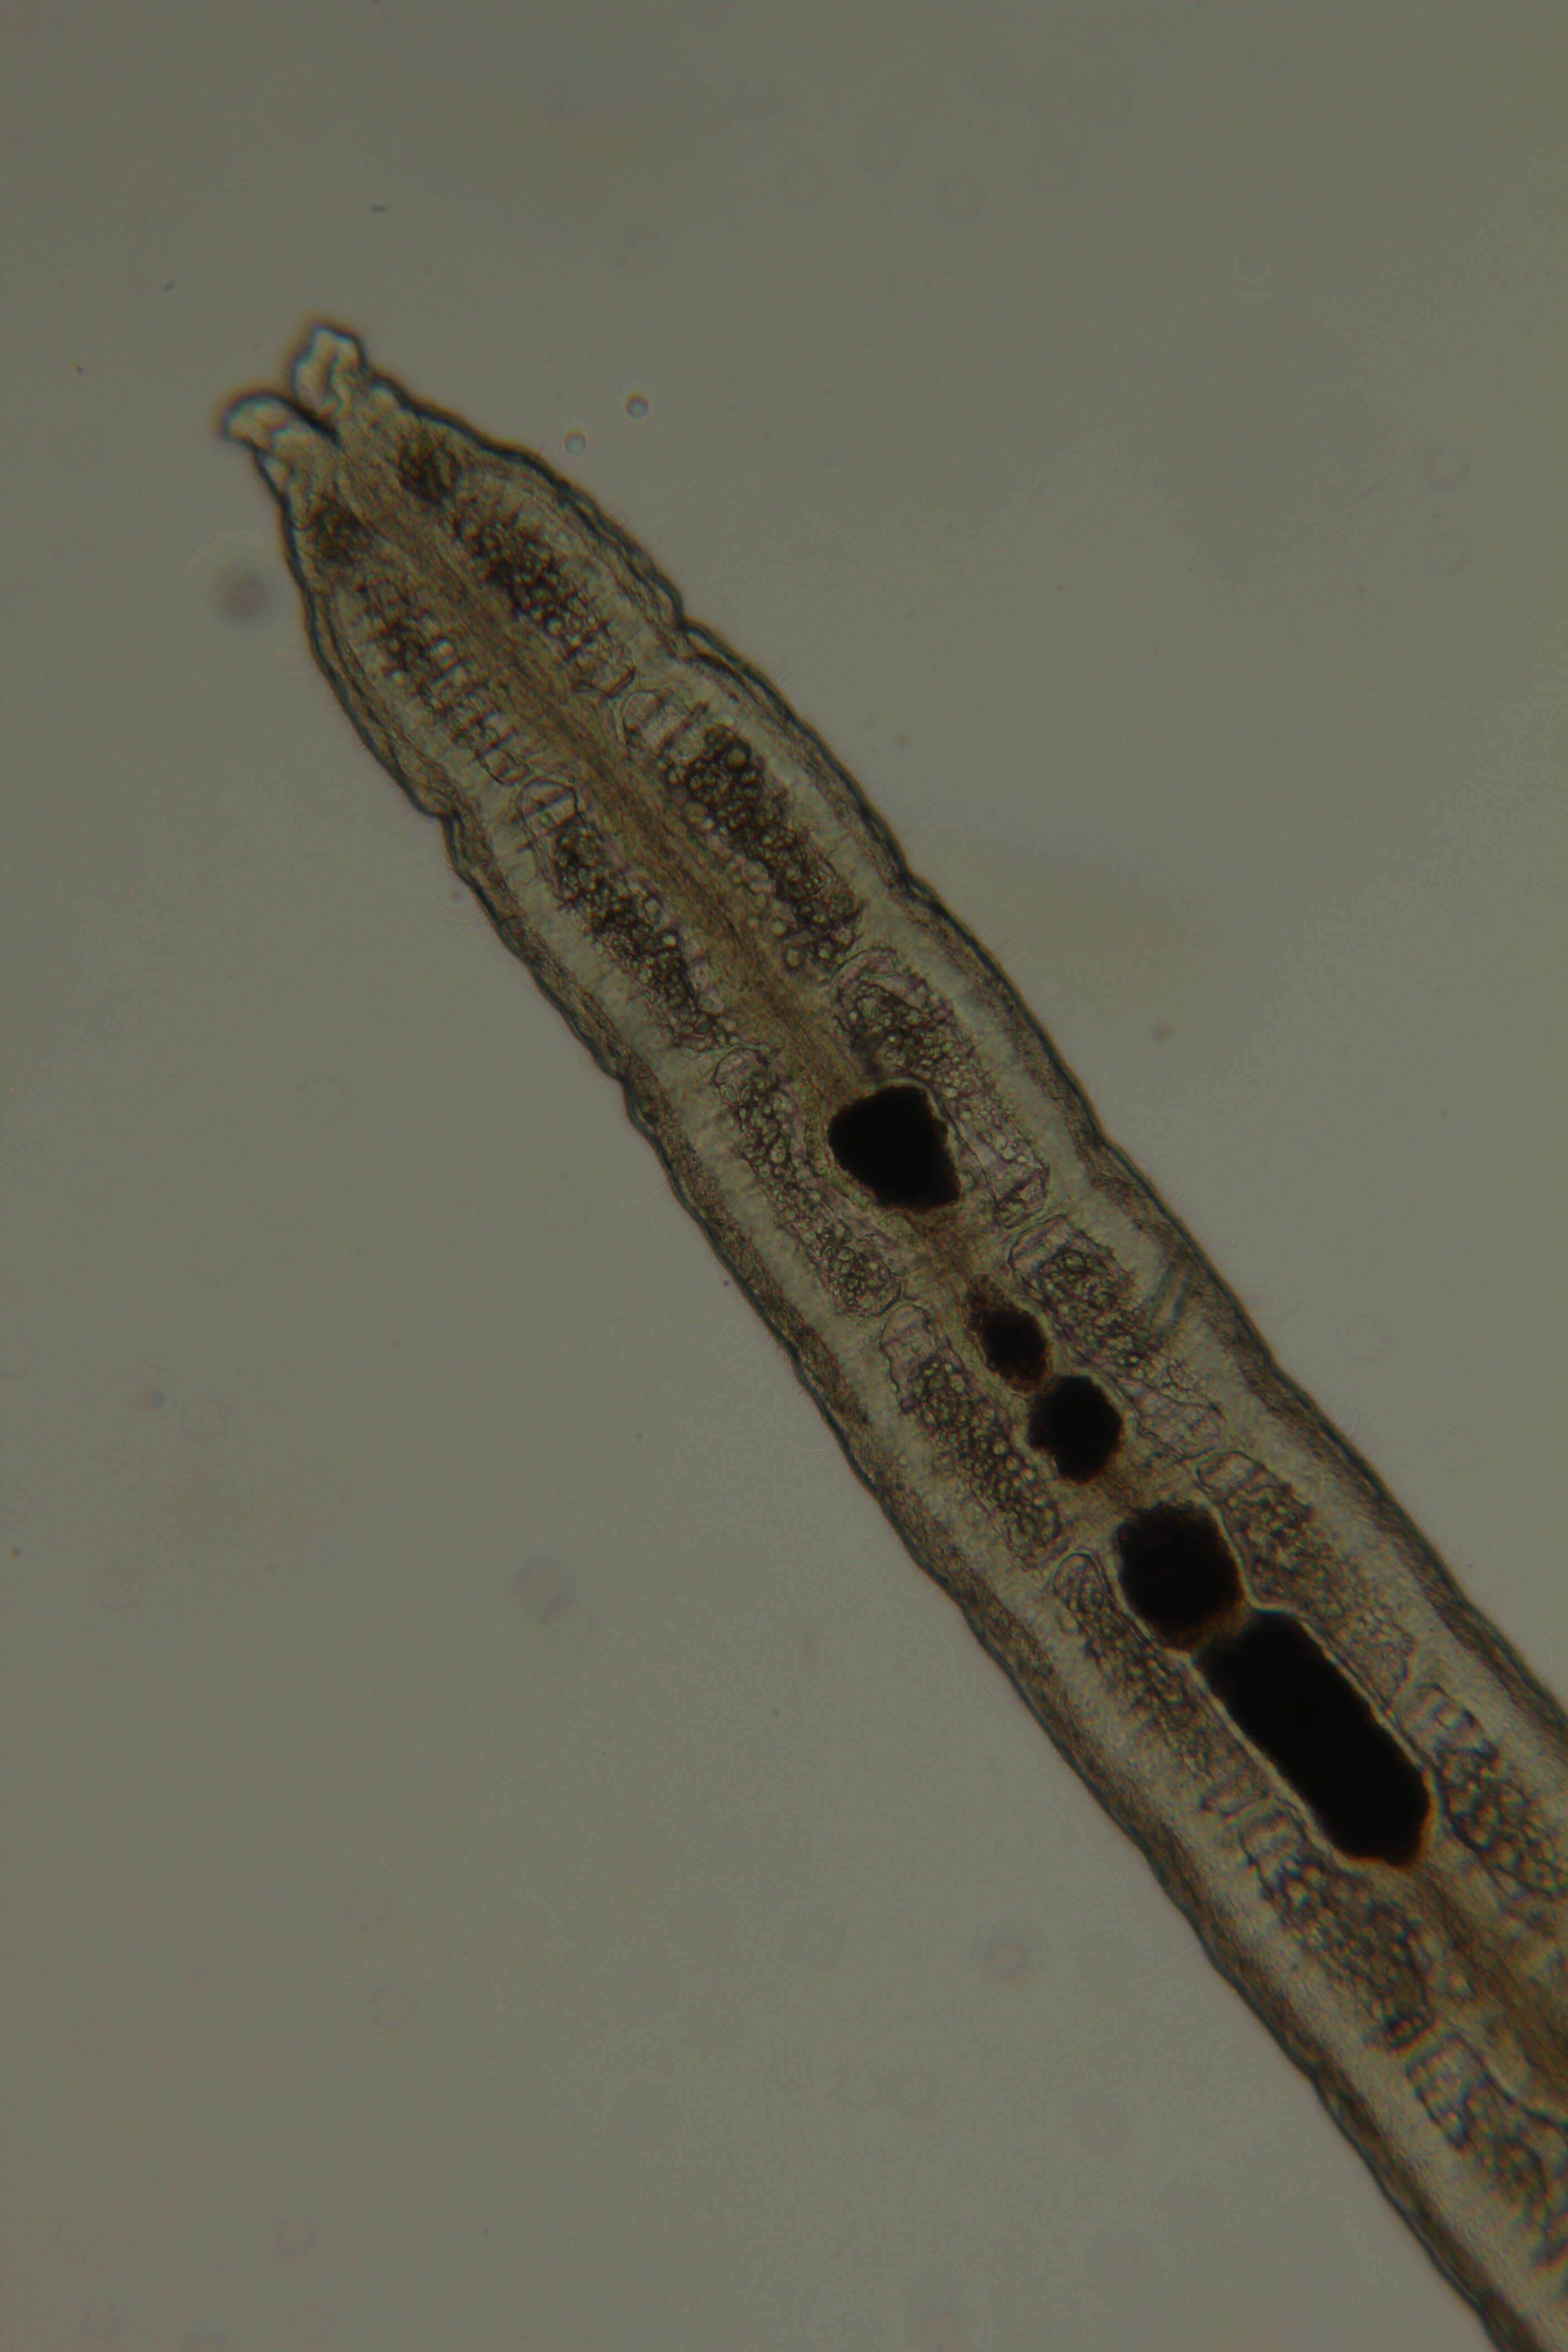 Image of Claudrilus ovarium (Di Domenico, Martínez, Lana & Worsaae 2013)